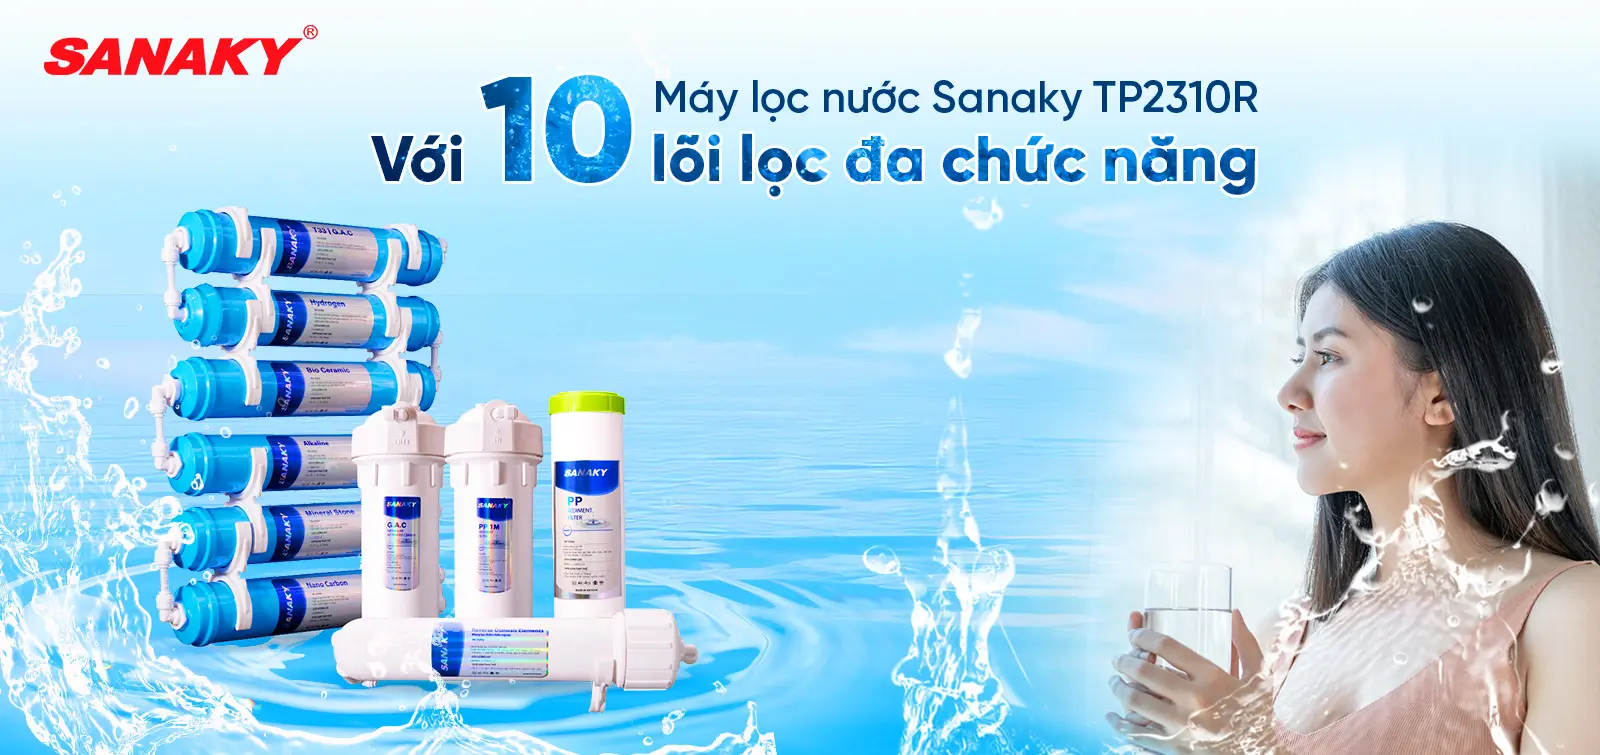 Máy lọc nước Sanaky TP2310Y với 10 lõi lọc đa chức năng